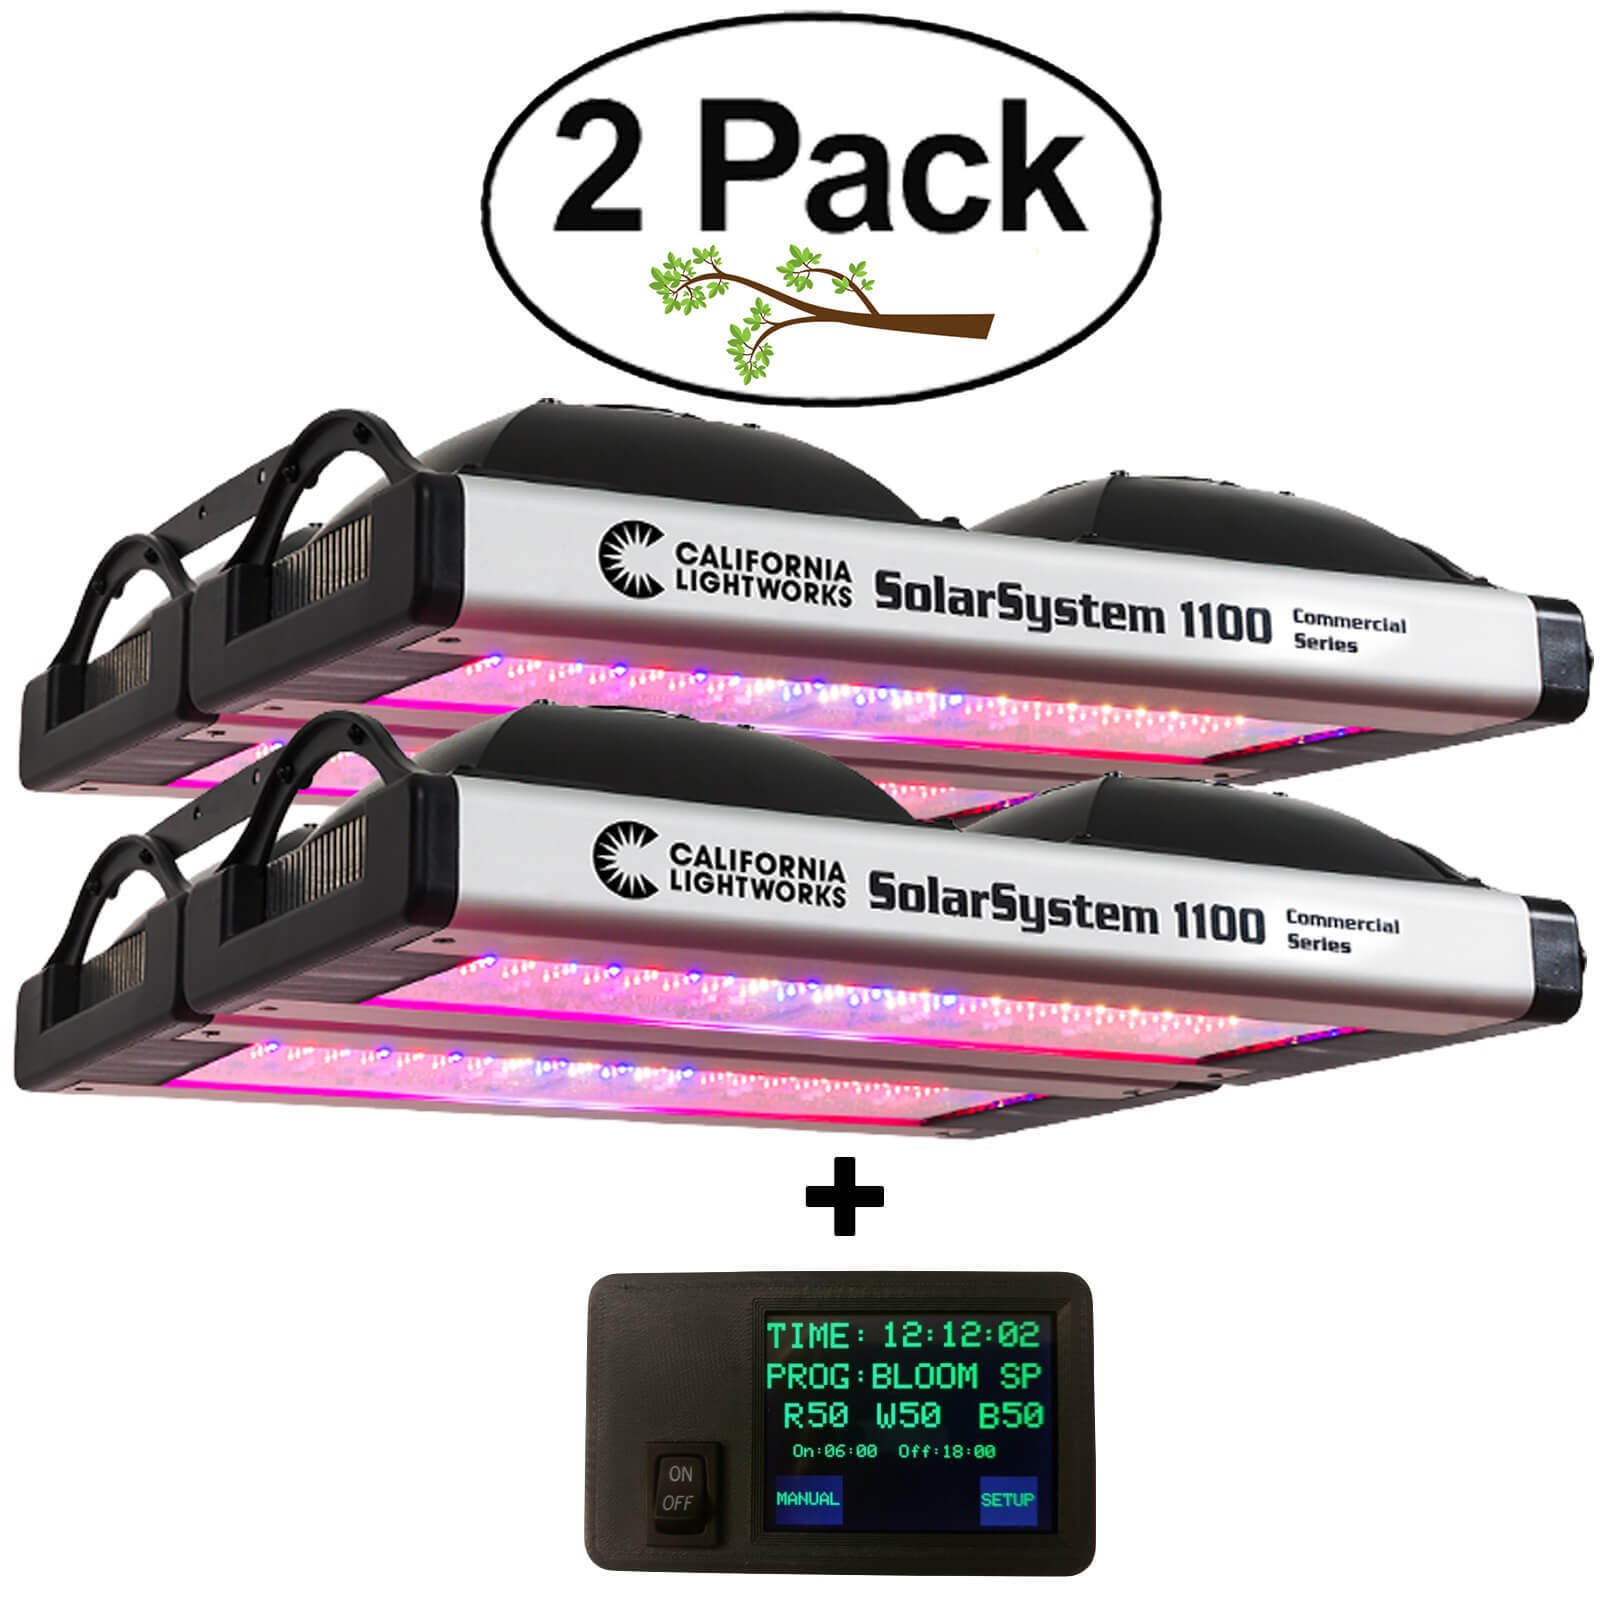 2 Pack - California Light Works SolarSystem 1100 LED Grow Light + CONTROLLER